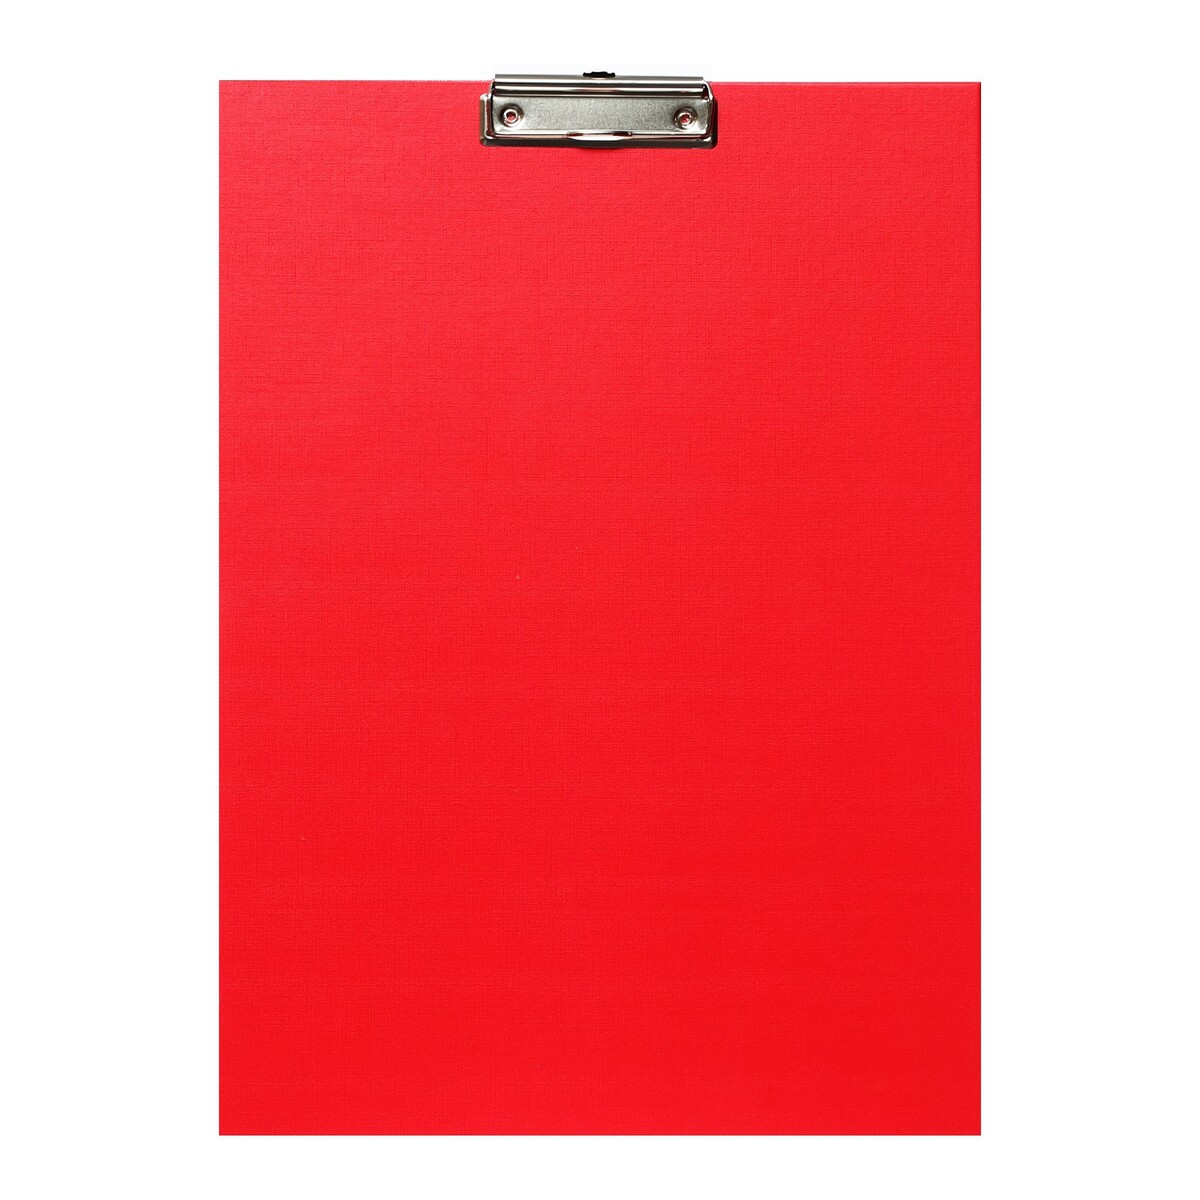 Планшет с зажимом а3, 420 x 320 мм, покрыт высококачественным бумвинилом, красный (клипборд) планшет с зажимом формат а4 3мм горизонтальный